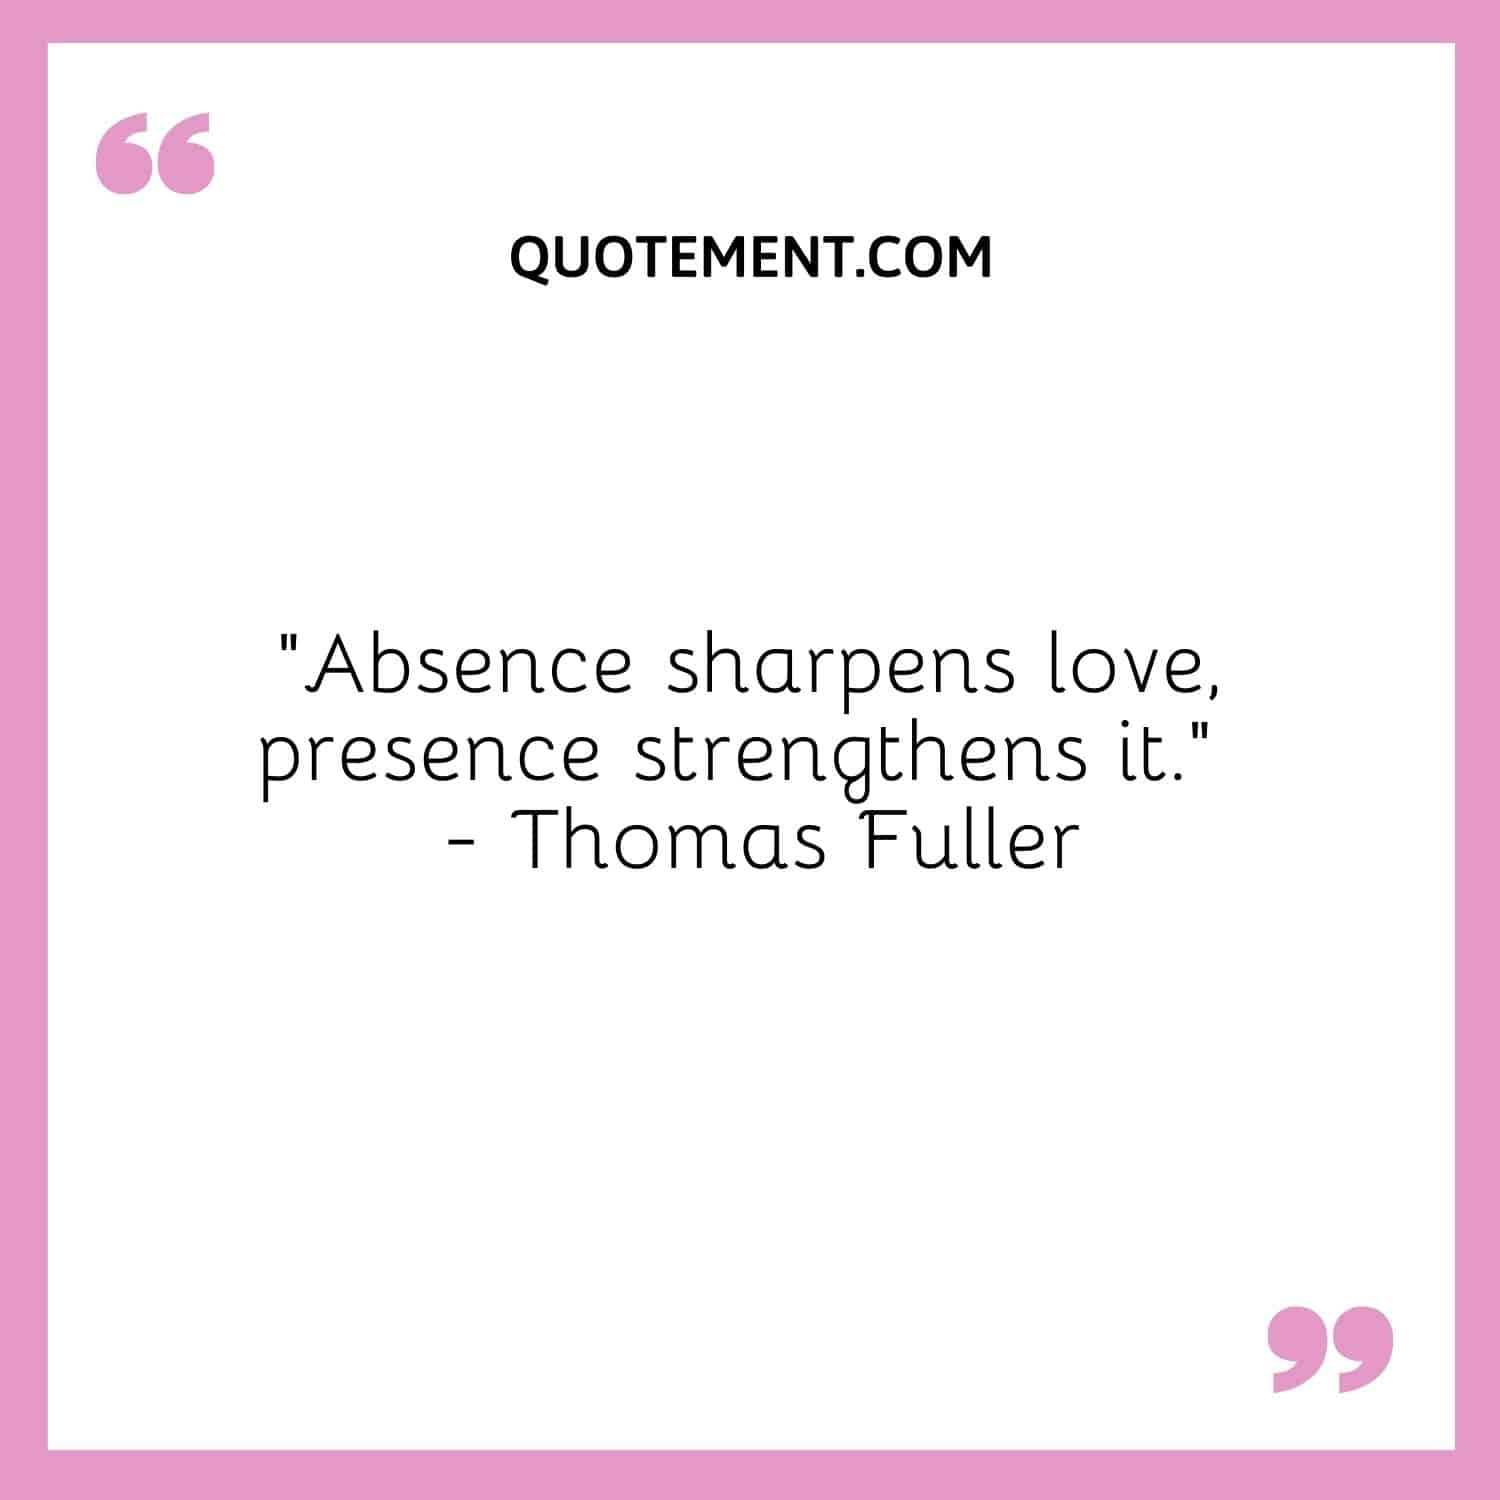 Absence sharpens love, presence strengthens it. — Thomas Fuller